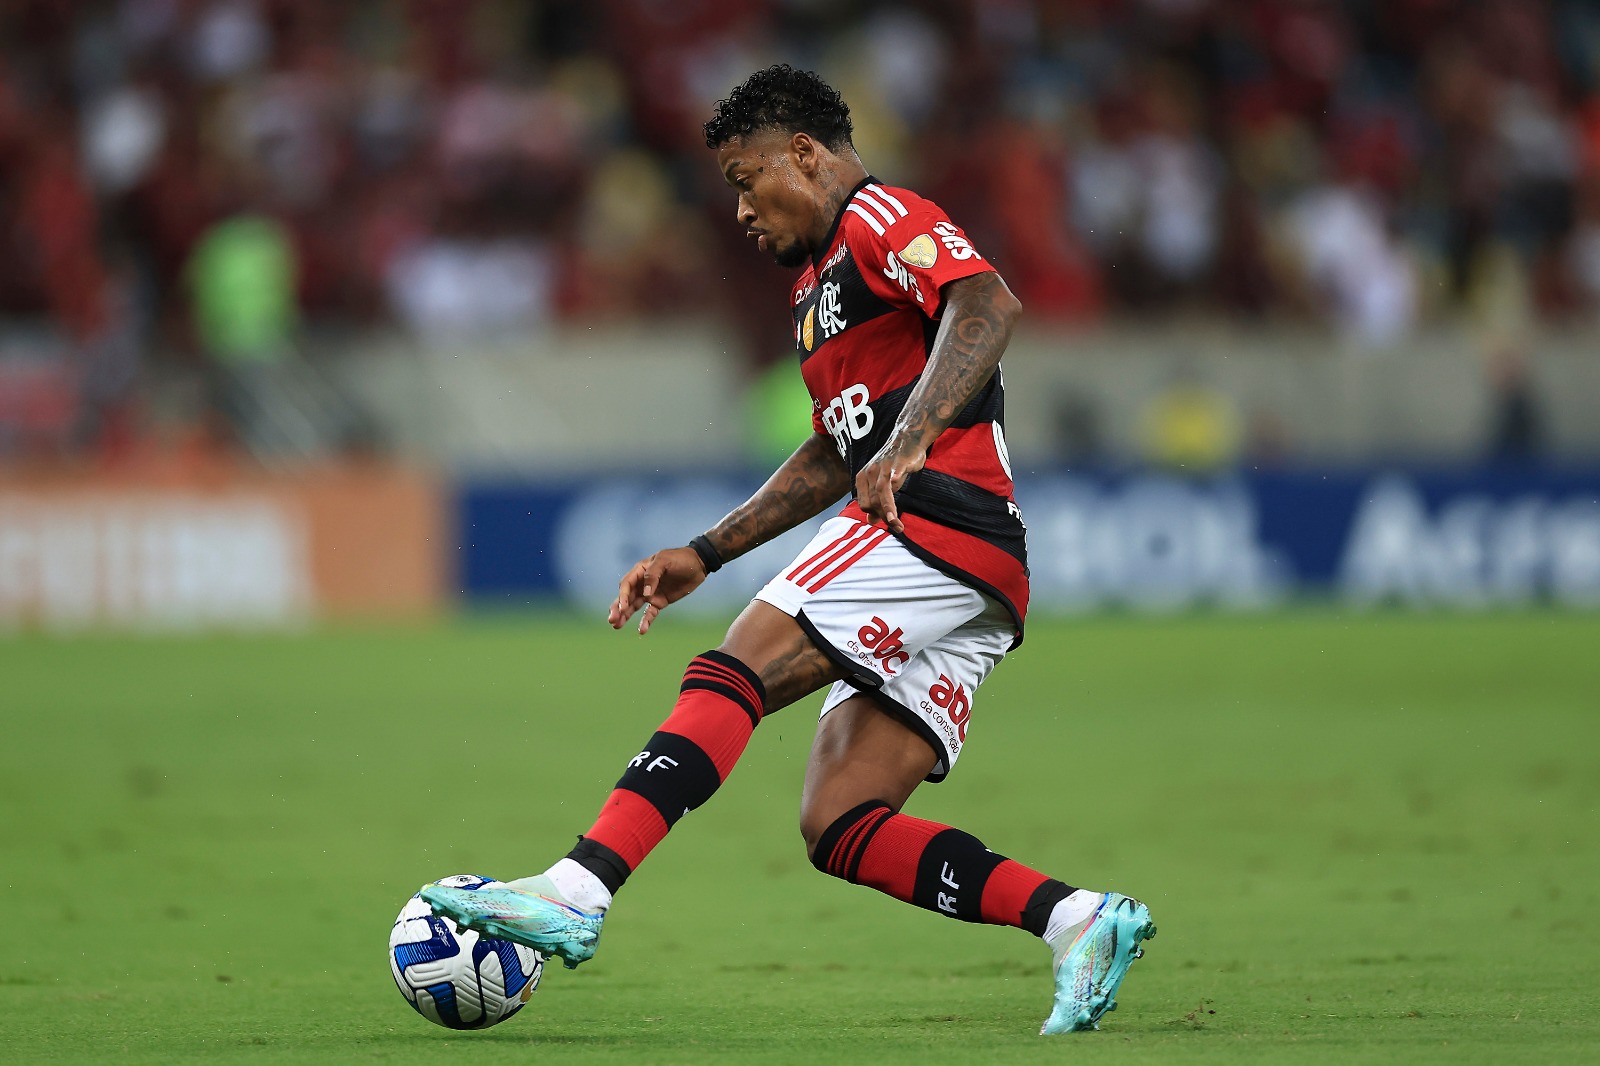 ‘Não sou nenhum craque, mas sou um cara dedicado’, diz Marinho após boa atuação pelo Flamengo na Libertadores